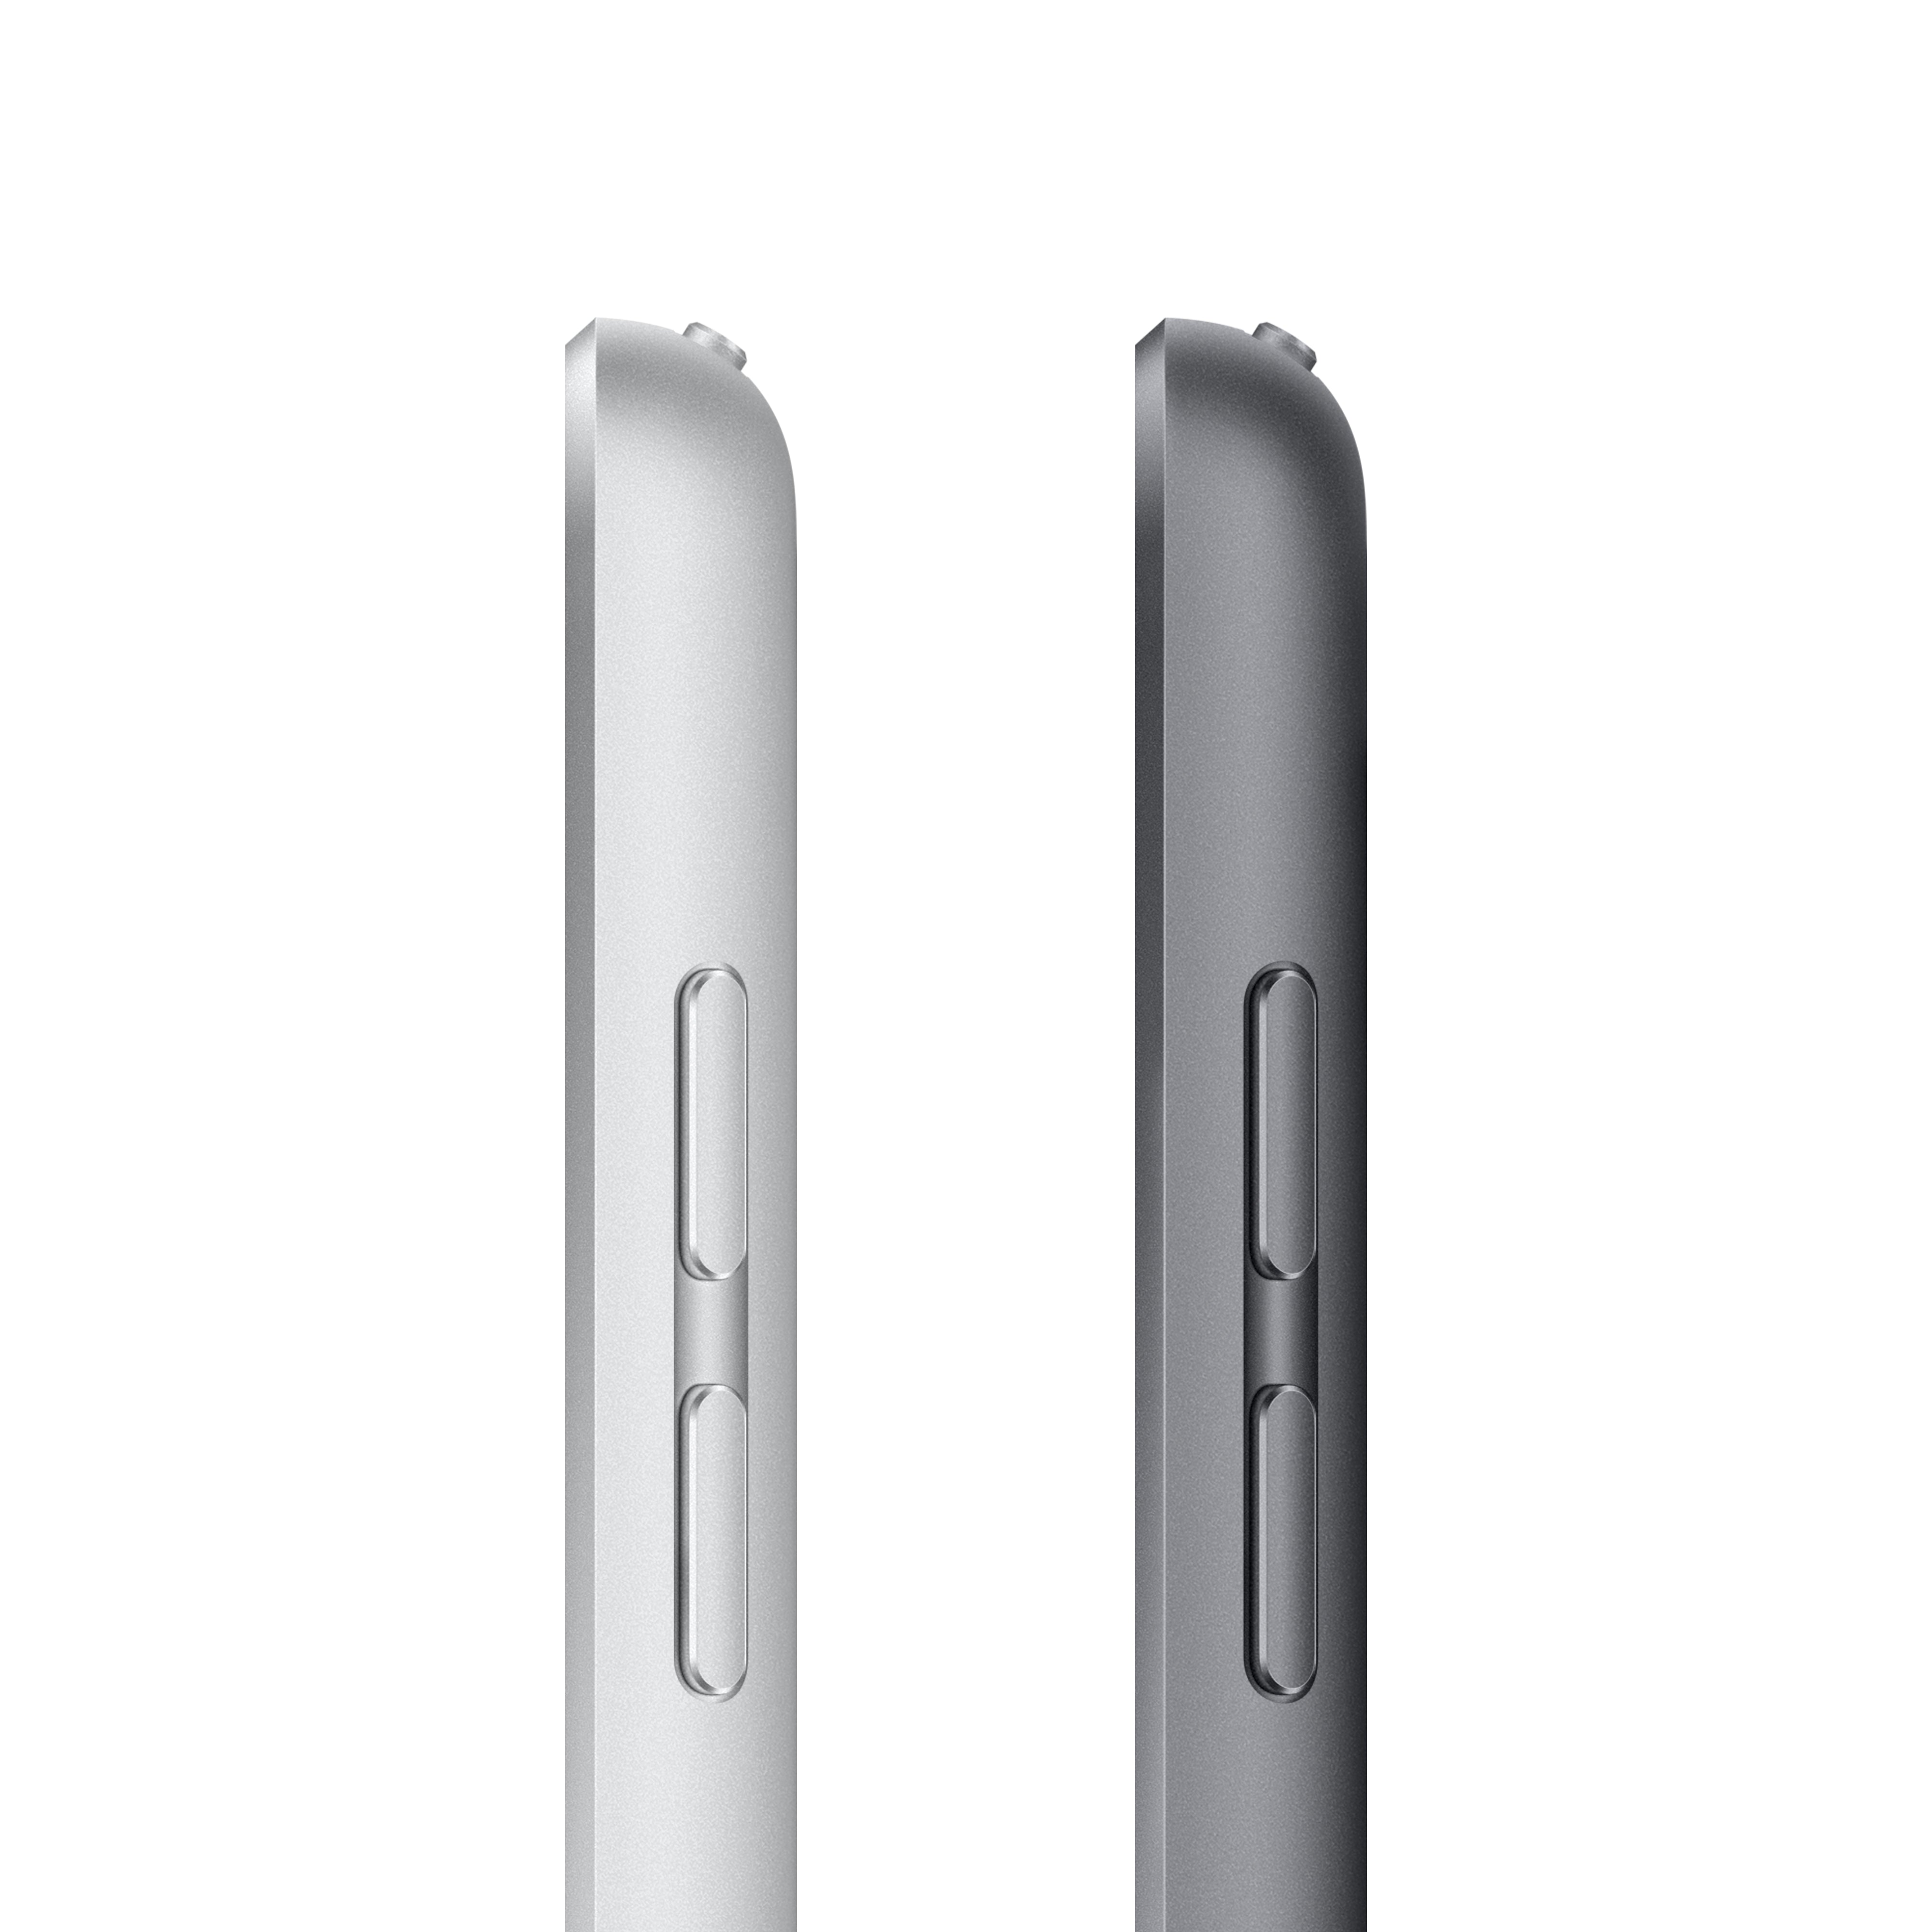 iPad 9th Gen 10.2-inch Wi-Fi + Cellular 256GB - Space Grey